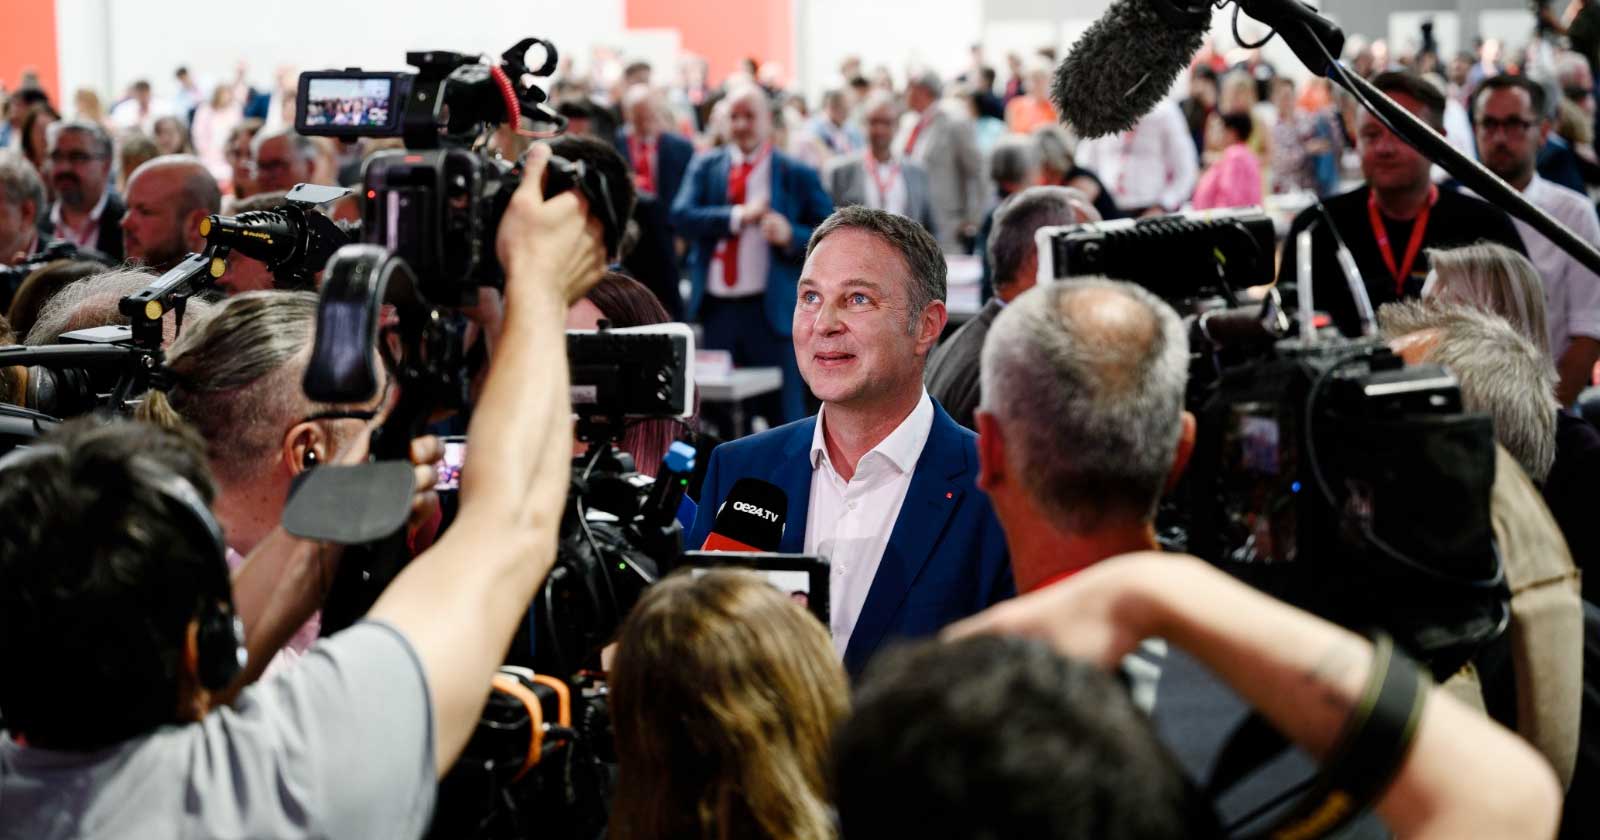 Das plant Andreas Babler für die SPÖ und für Österreich